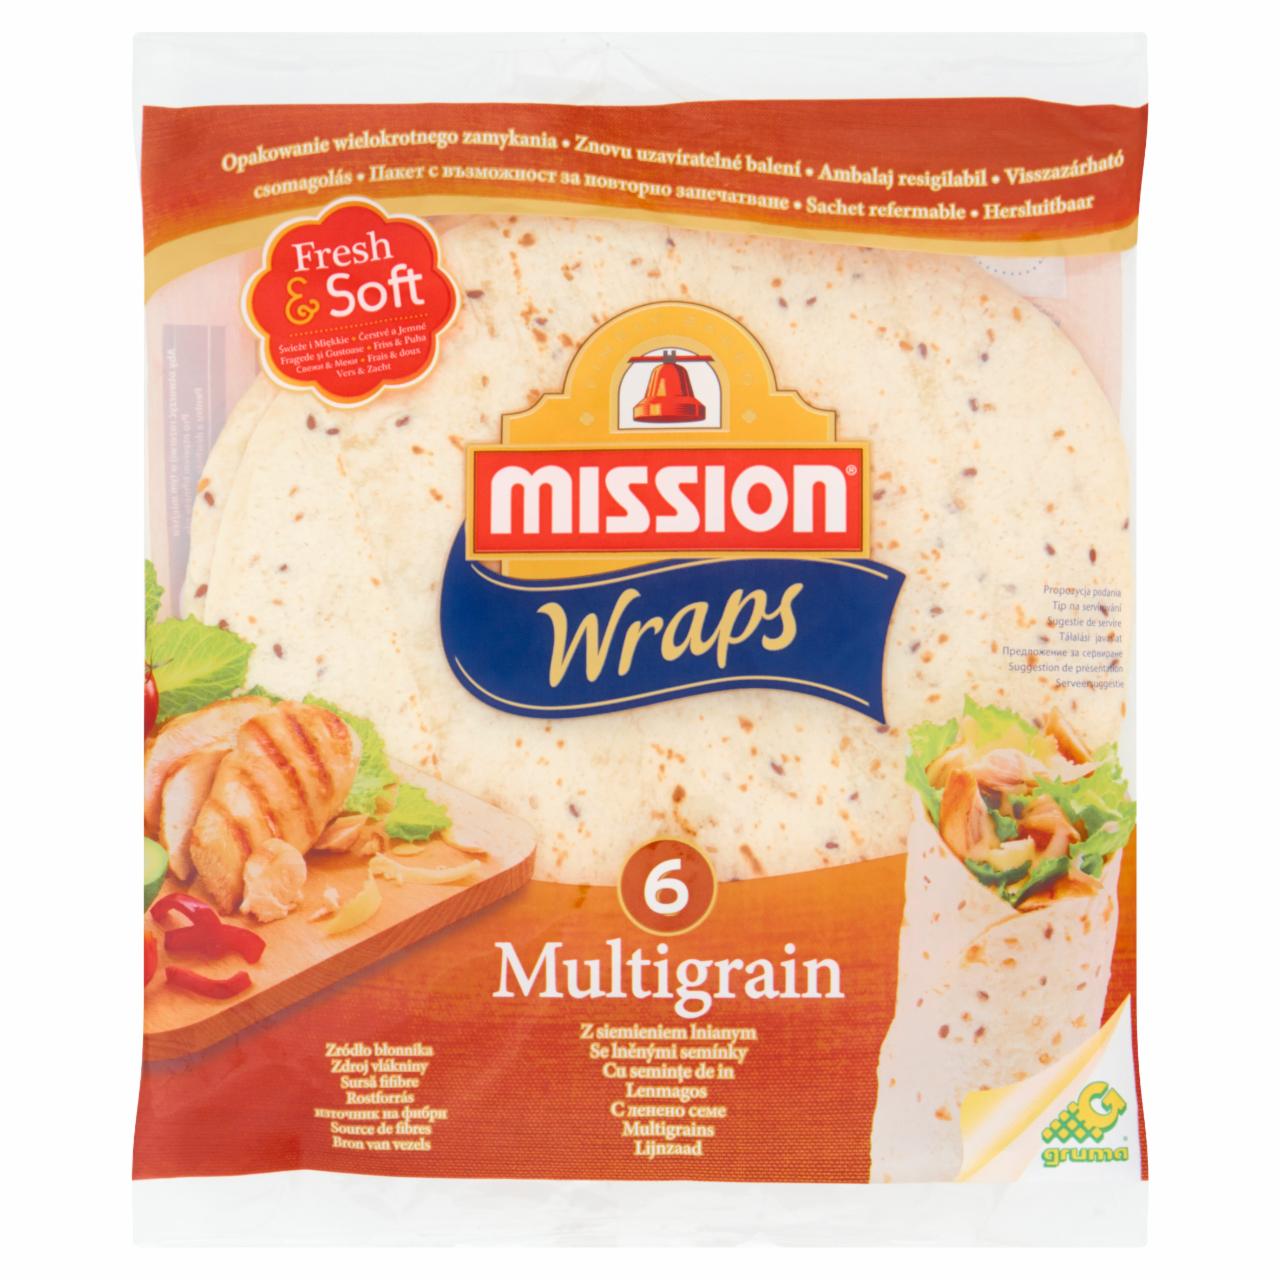 Zdjęcia - Mission Wraps multigrain wheat flour tortilla with linseed (Tortilla z mąki pszennej z siemieniem lnianym) Mission